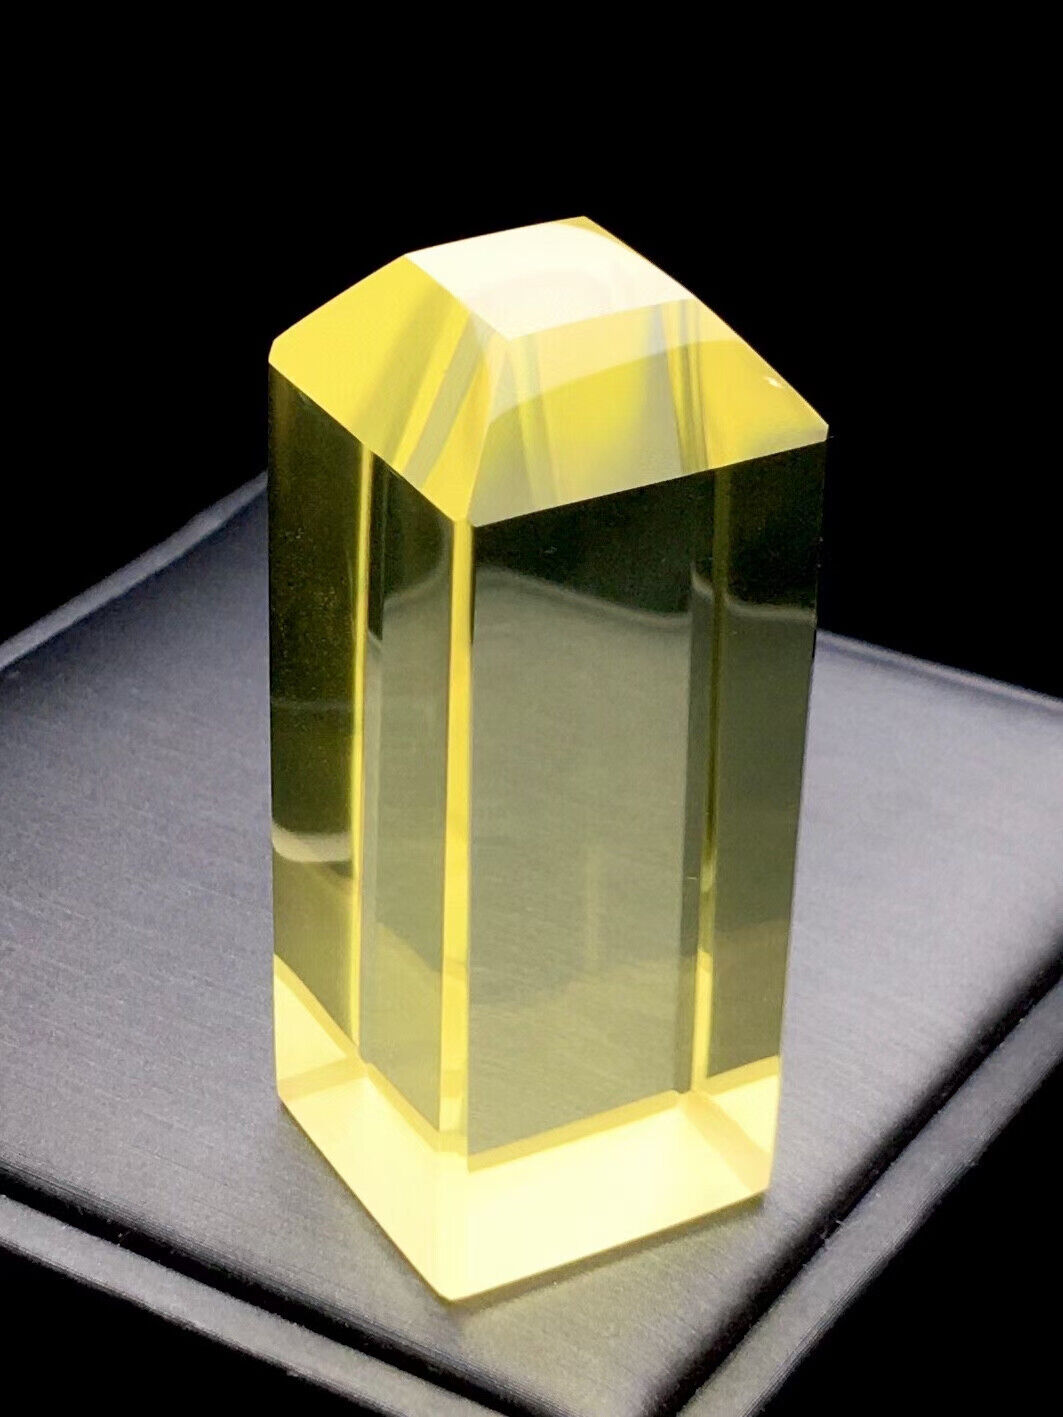 70g Top Natural Citrine Crystal Quartz Crystal Mineral Specimen heal gem